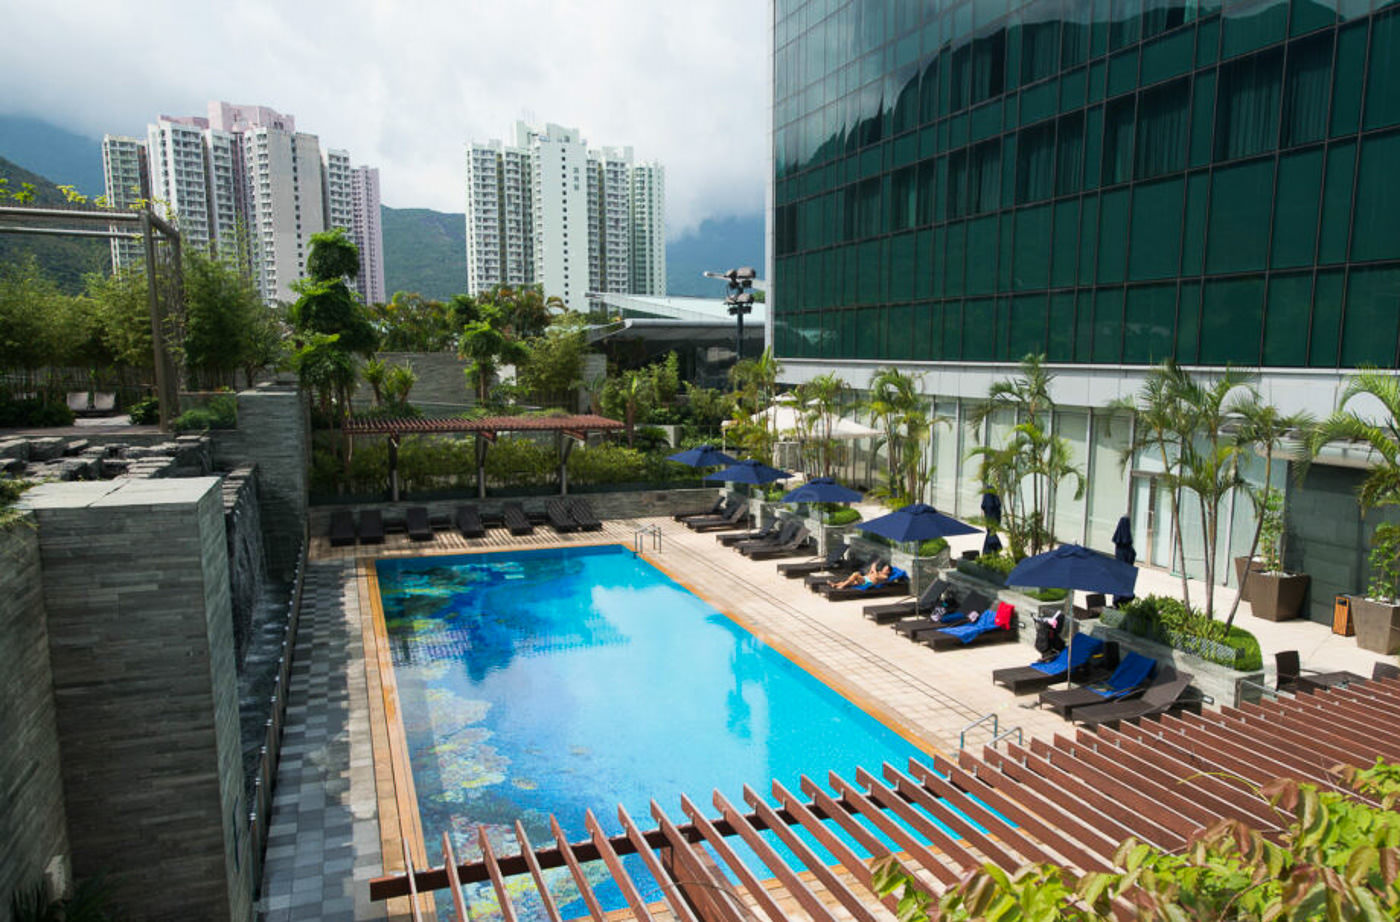 10 BEST CHEAP HOTELS ON HONG KONG ISLAND